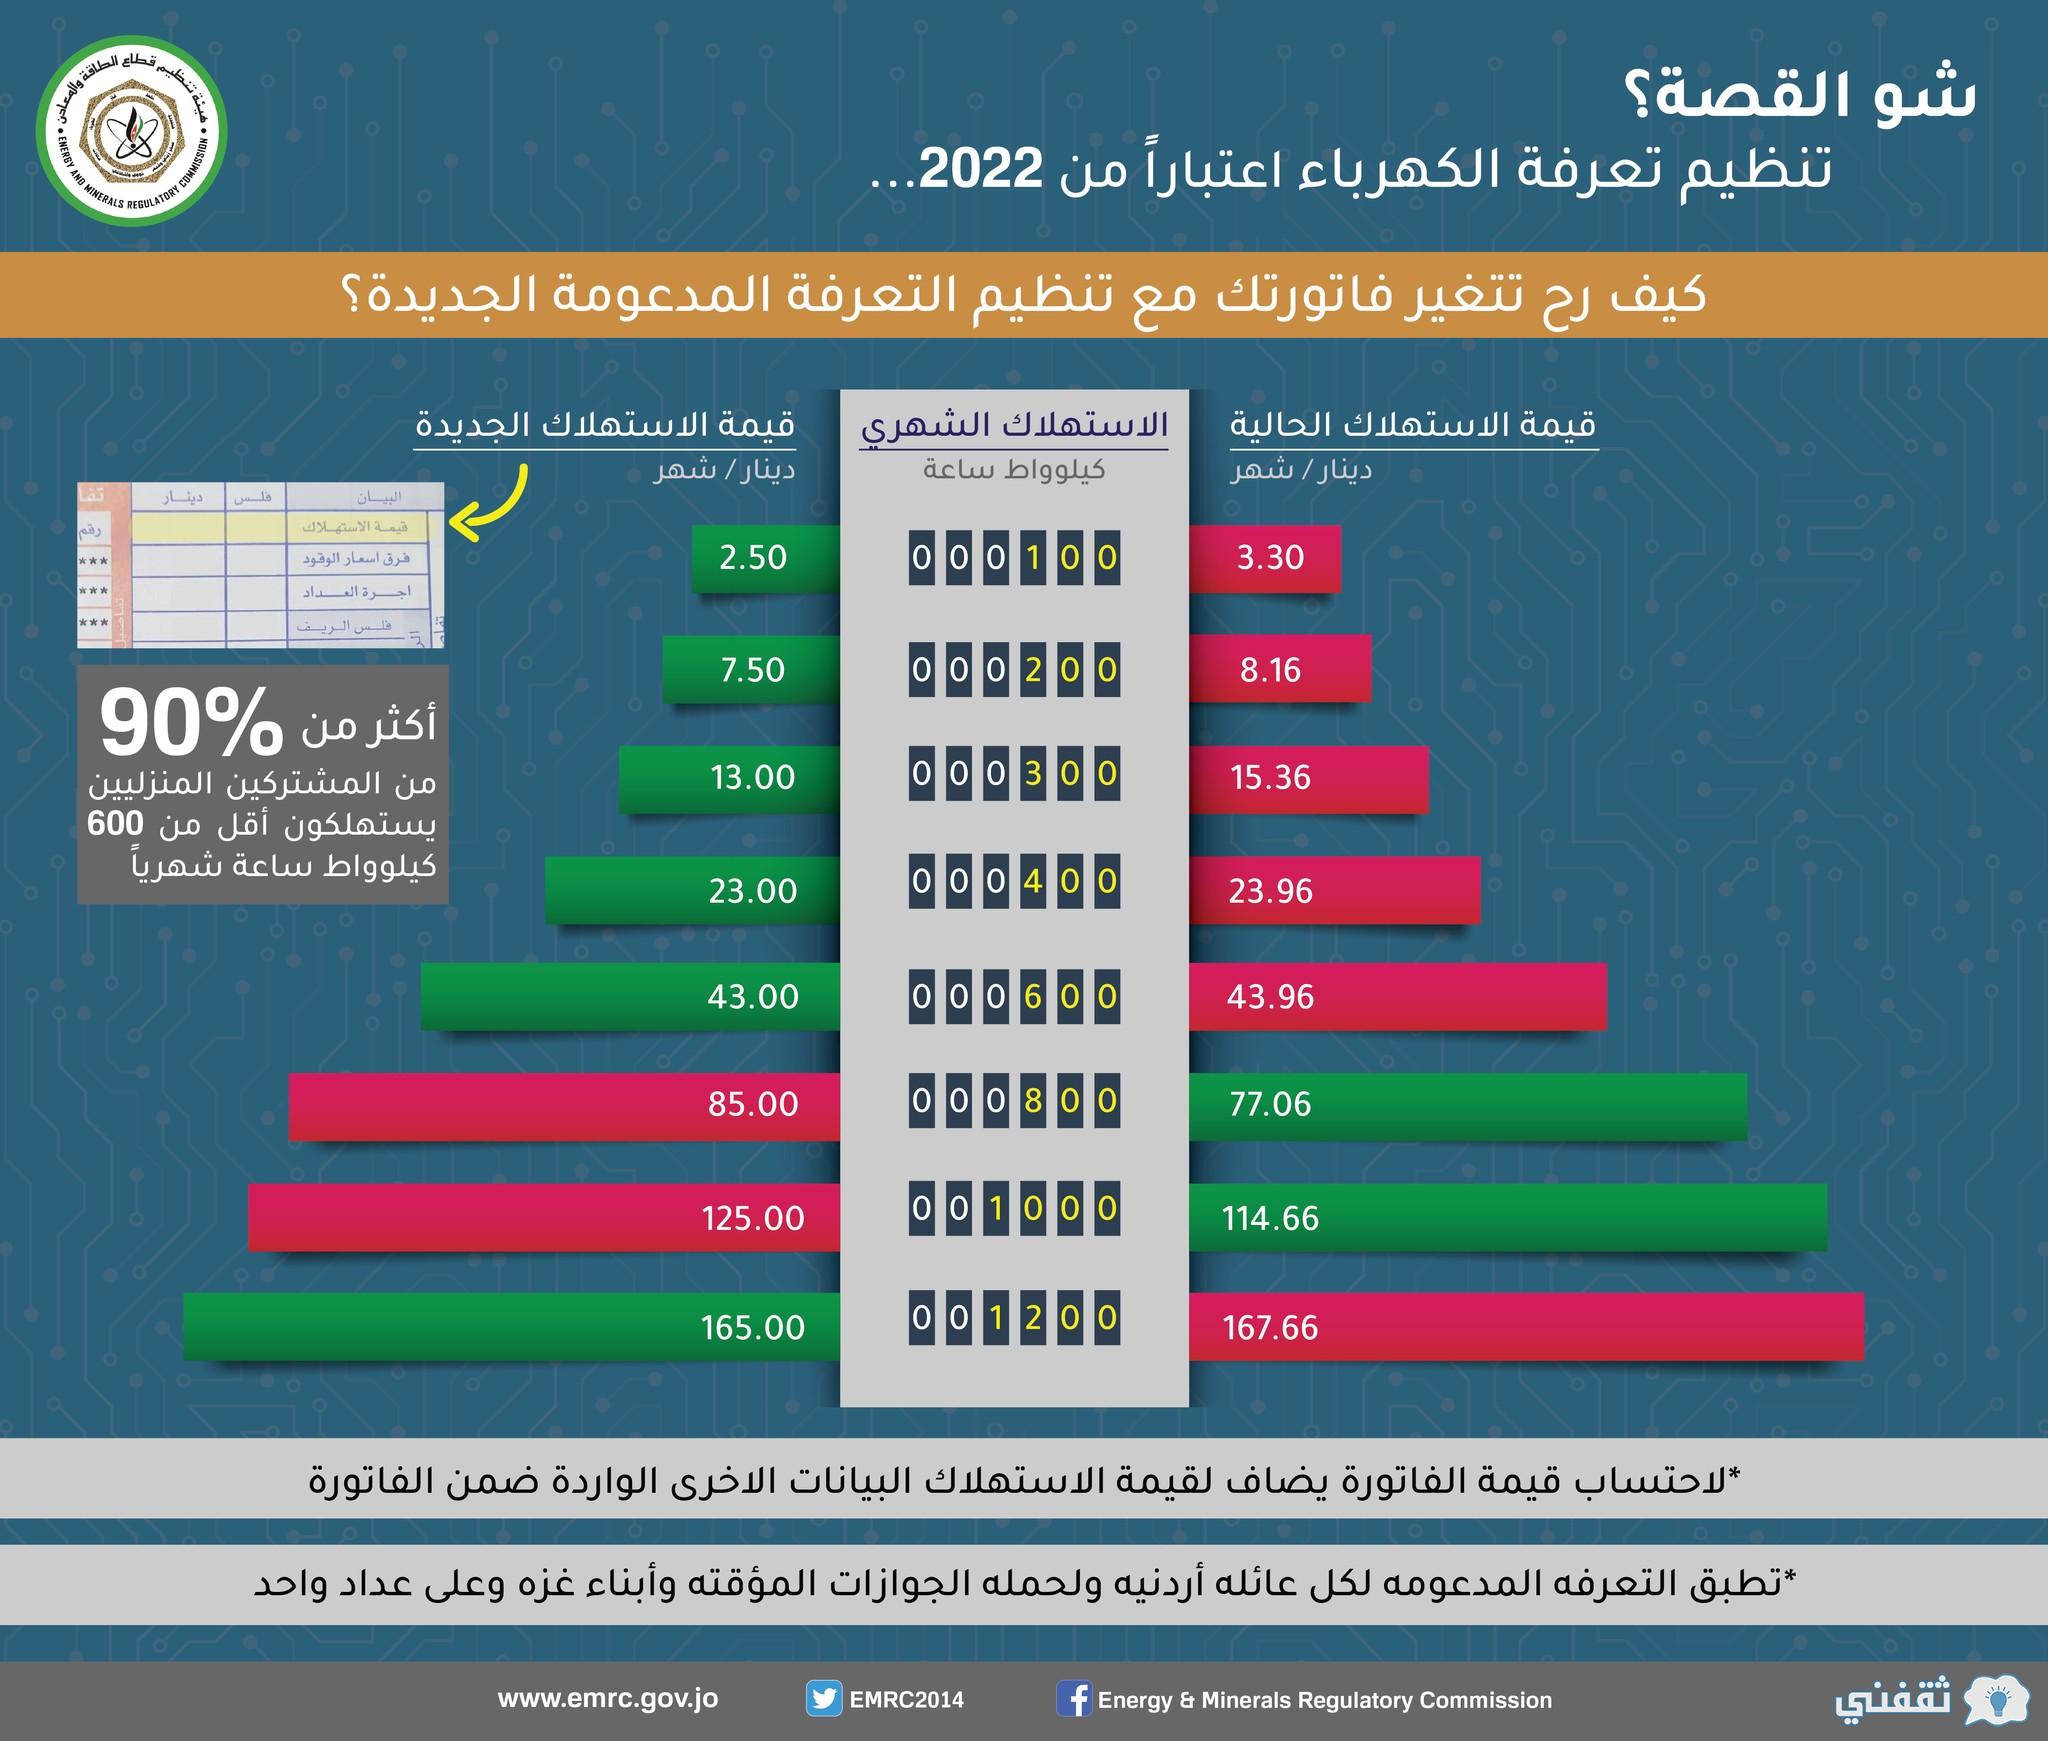 "ابدأ التسجيل" kahraba.gov.jo منصة دعم الكهرباء 2022 شروط الدعم المالي (الأسر - المؤسسات)